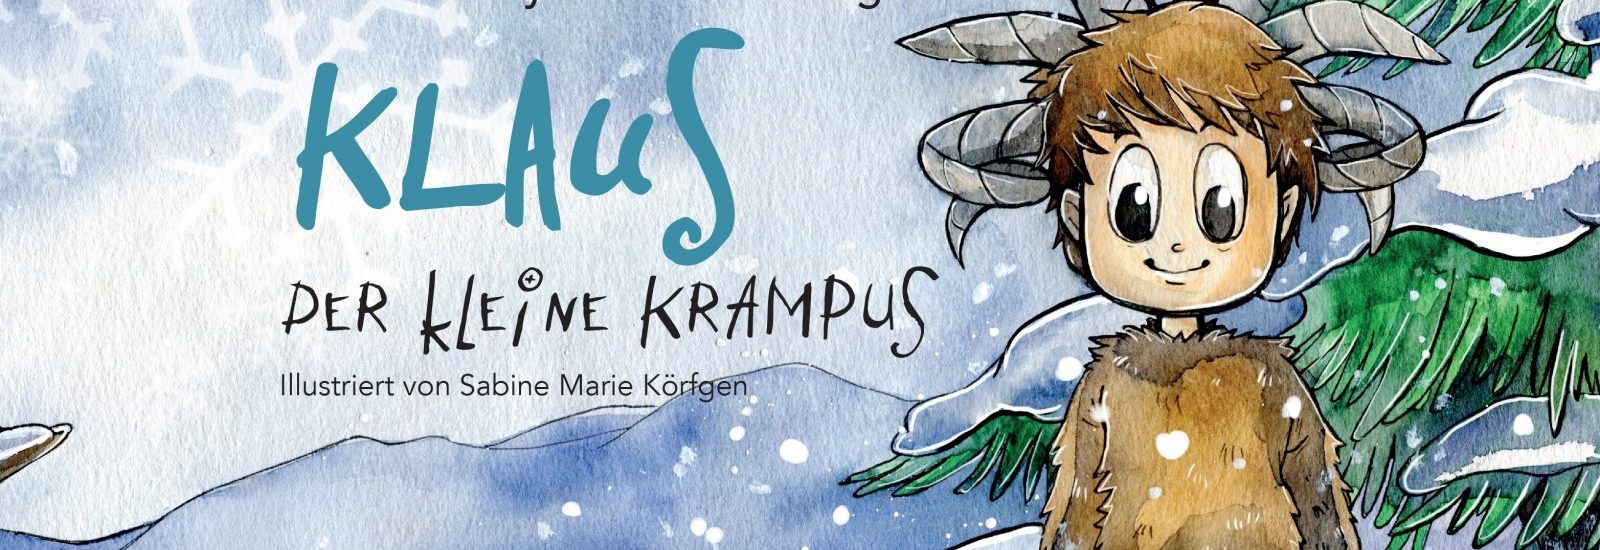 Klaus der kleine Krampus Kinderbuch